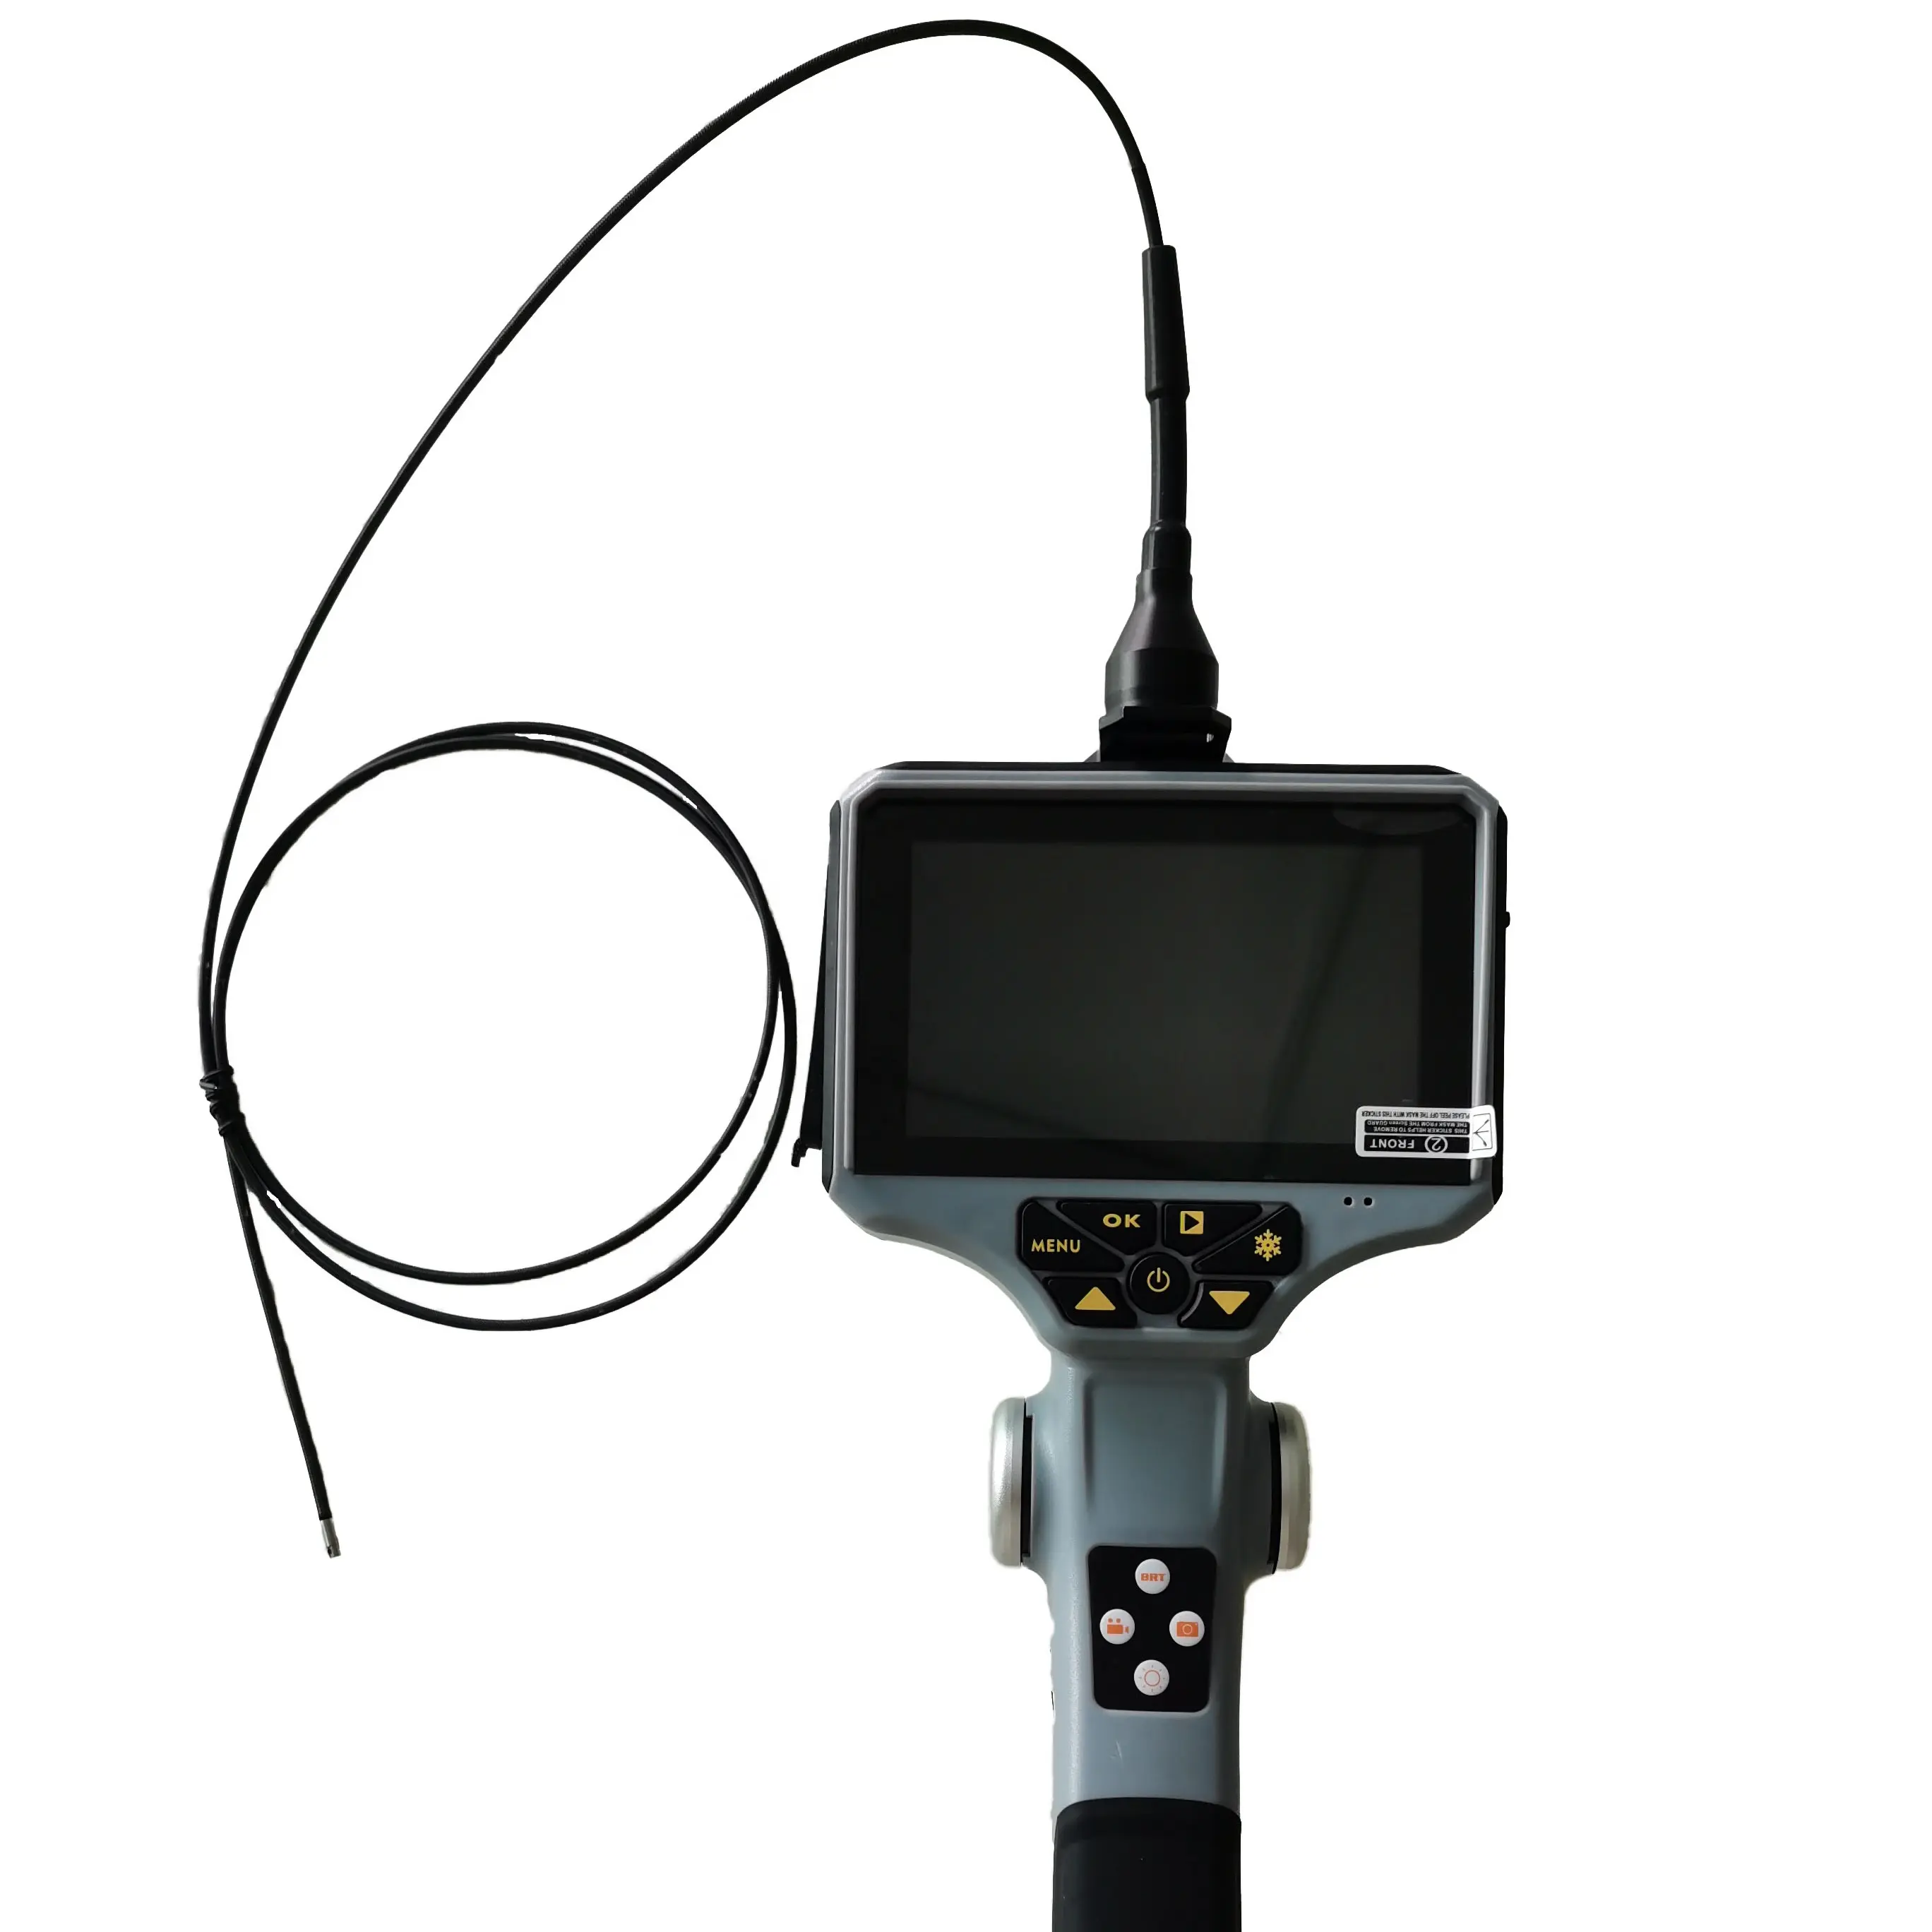 กล้องส่องวิดีโอ Borescope ยาว2.8มม.,กล้องตรวจสอบกล้องวิดีโอพร้อมจอ LCD 5นิ้วการทดสอบด้วยภาพเส้นผ่านศูนย์กลาง1.2มม. แบบยืดหยุ่น